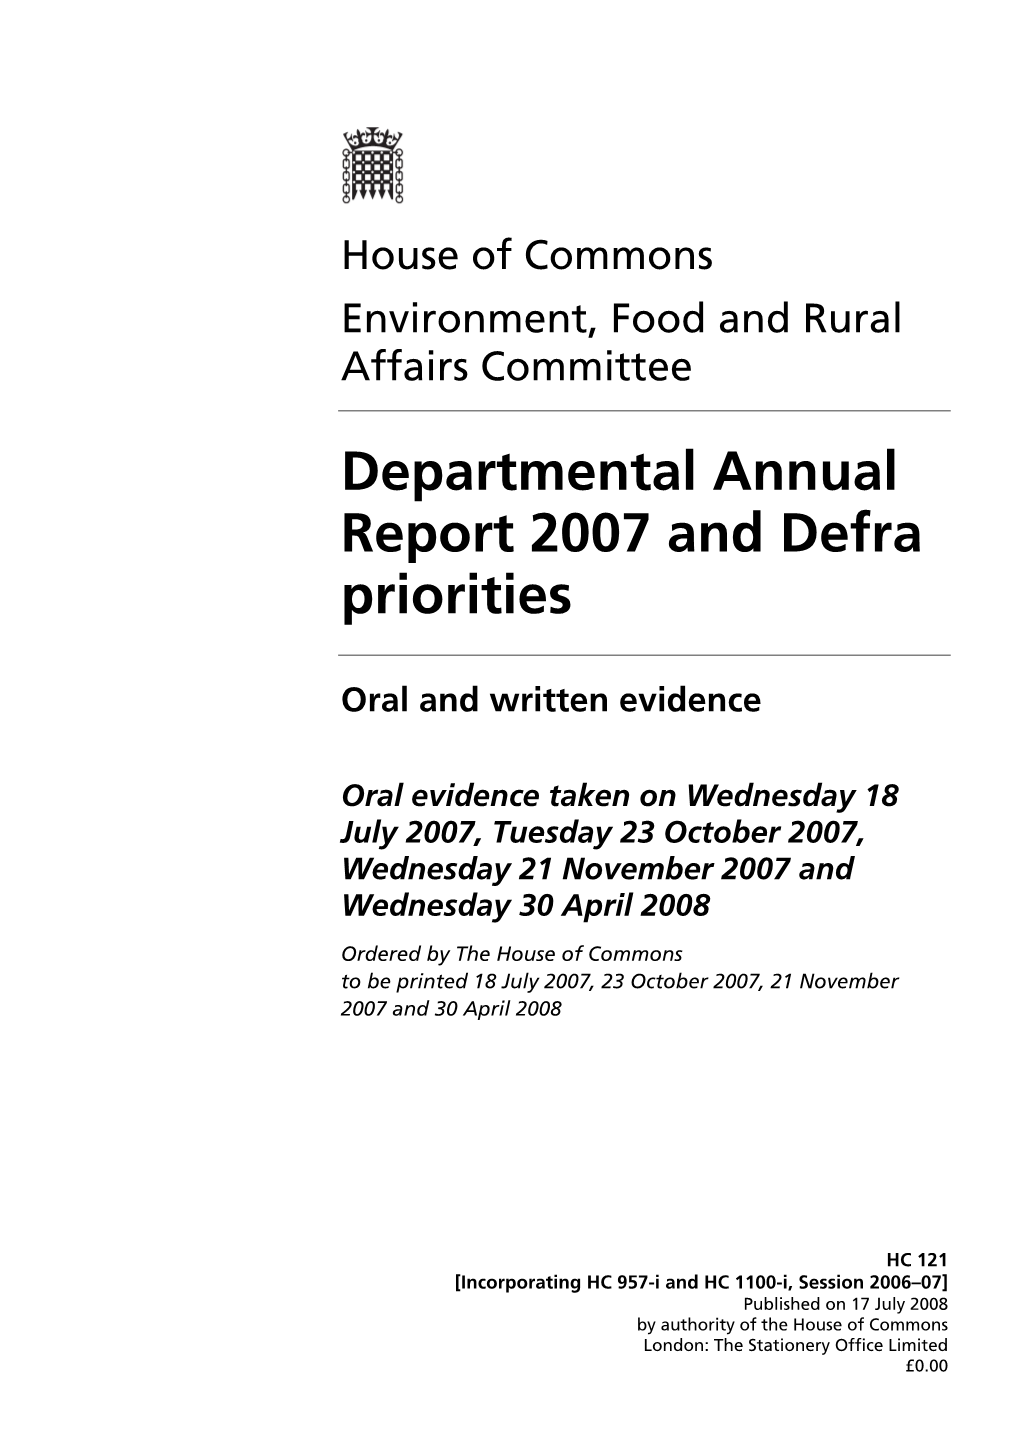 Departmental Annual Report 2007 and Defra Priorities